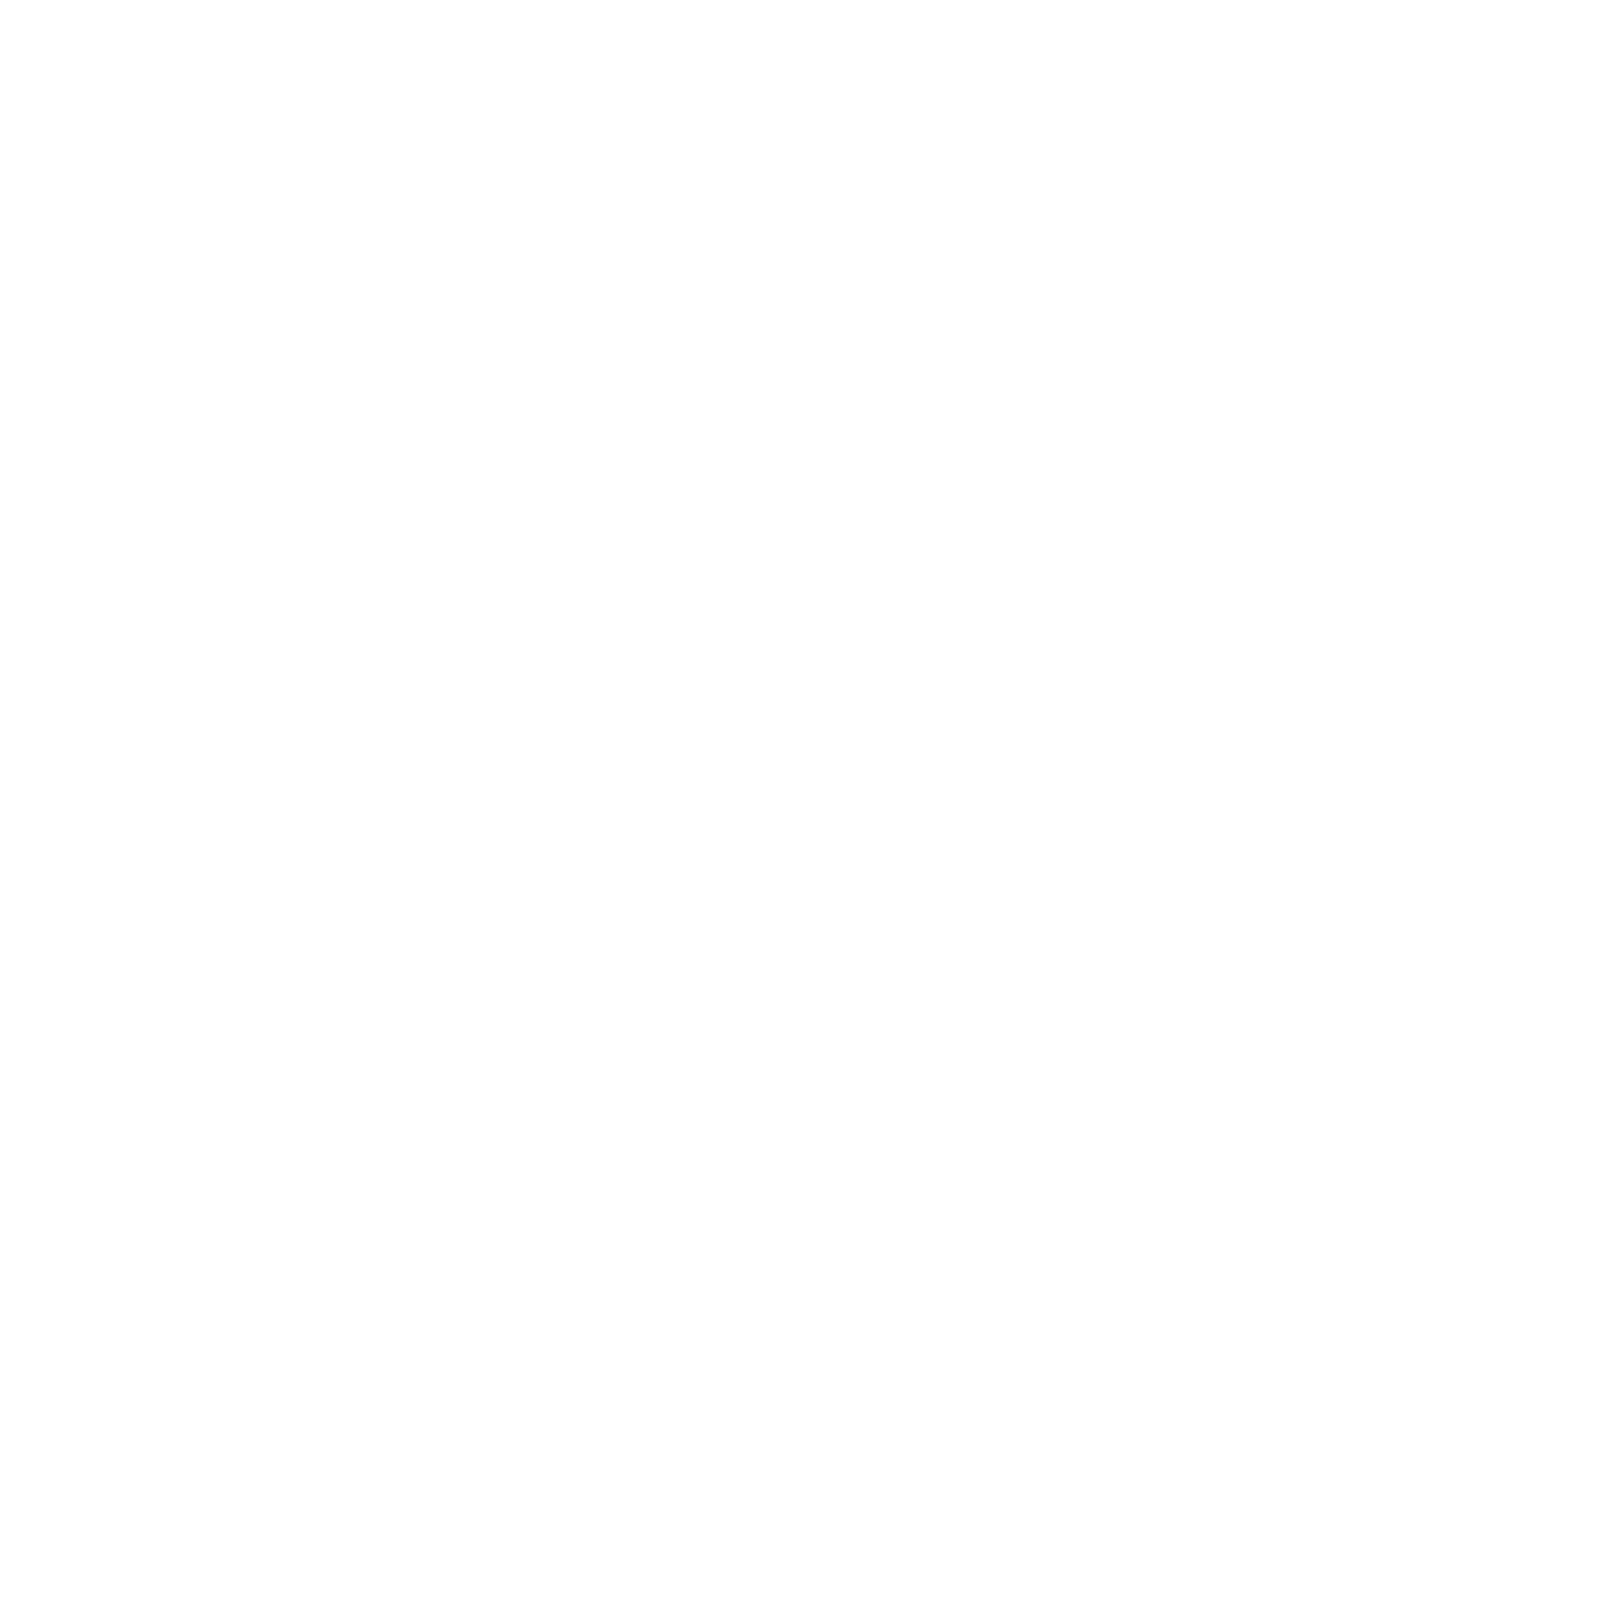 grafika – ciężarówka z napisem FREE, symbol oznaczający darmową dostawę